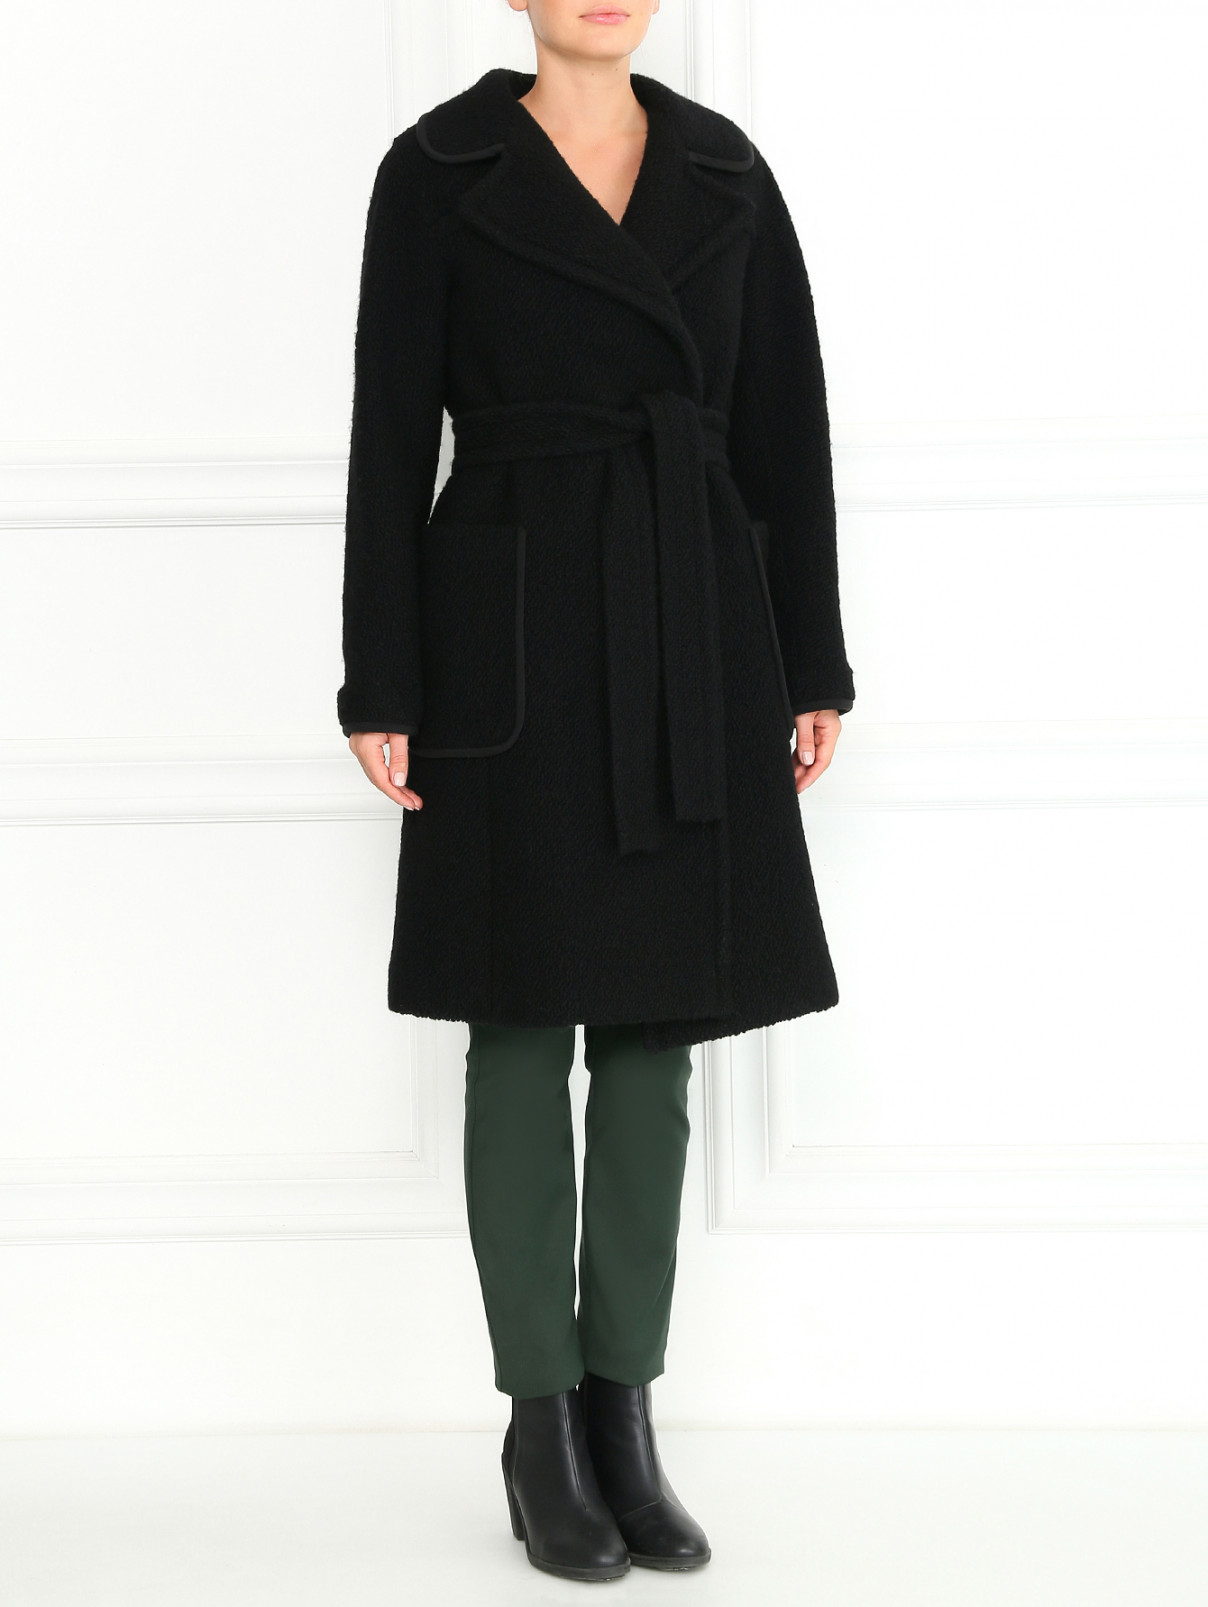 Пальто из шерсти и шелка с поясом Aquilano Rimondi  –  Модель Общий вид  – Цвет:  Черный